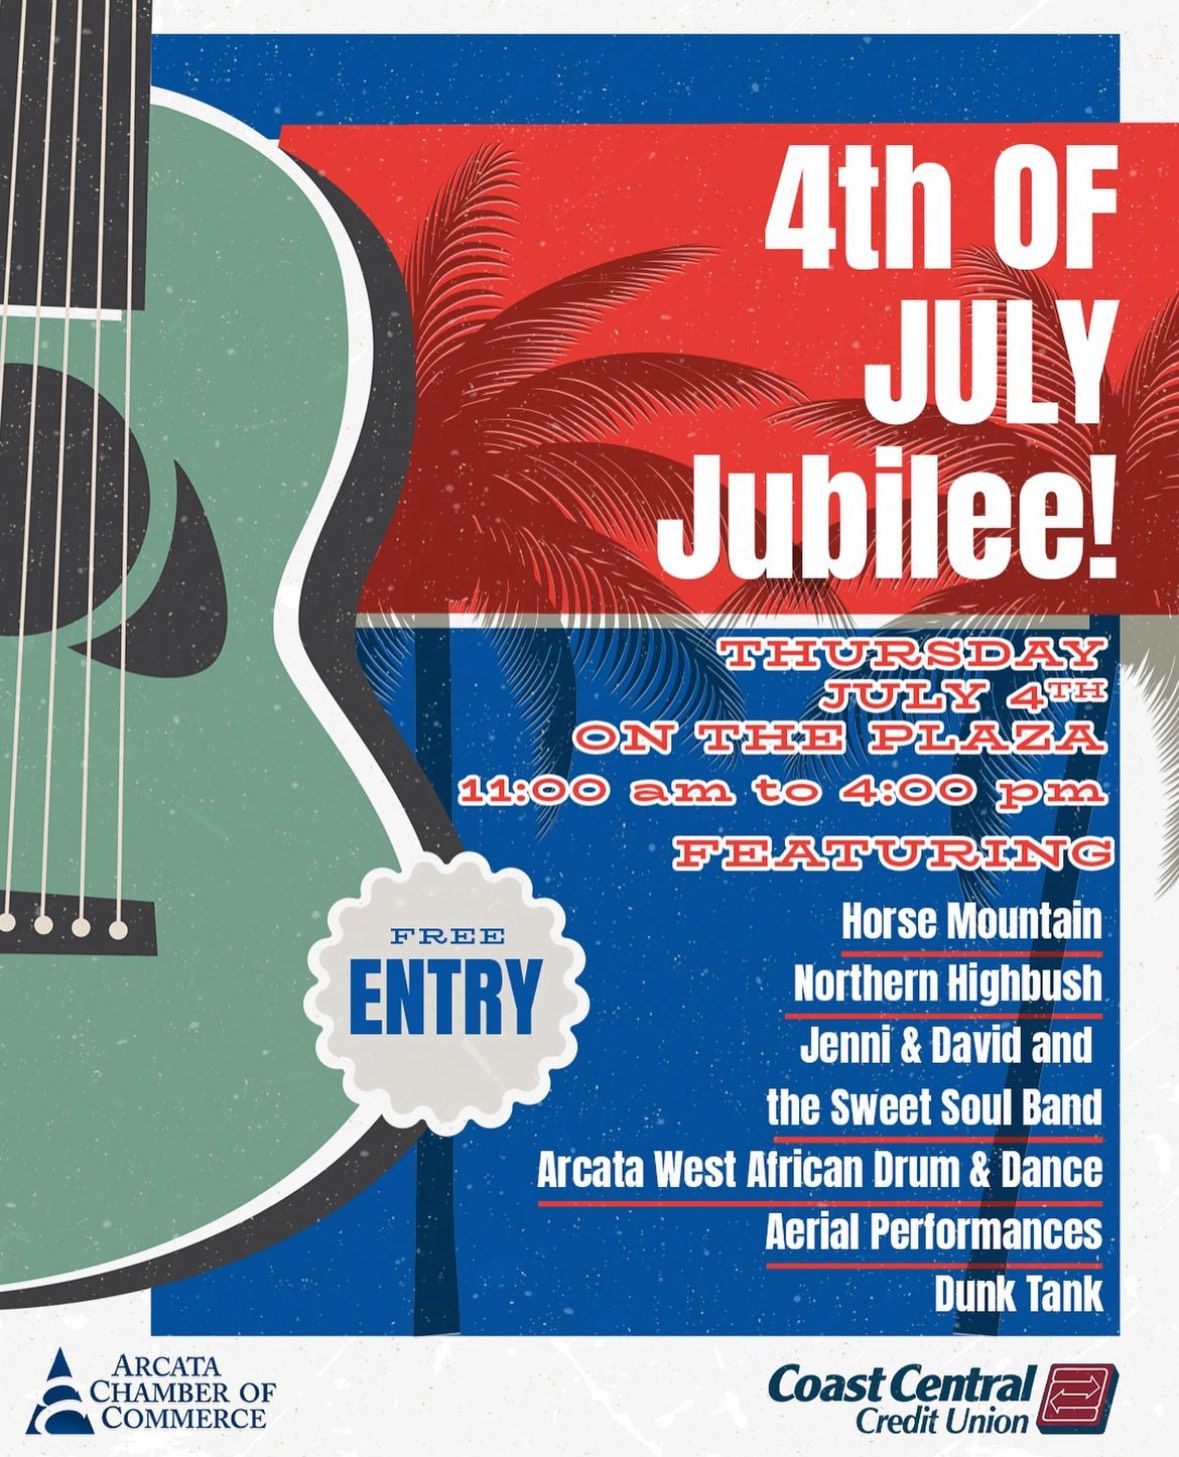 4th of July Jubilee